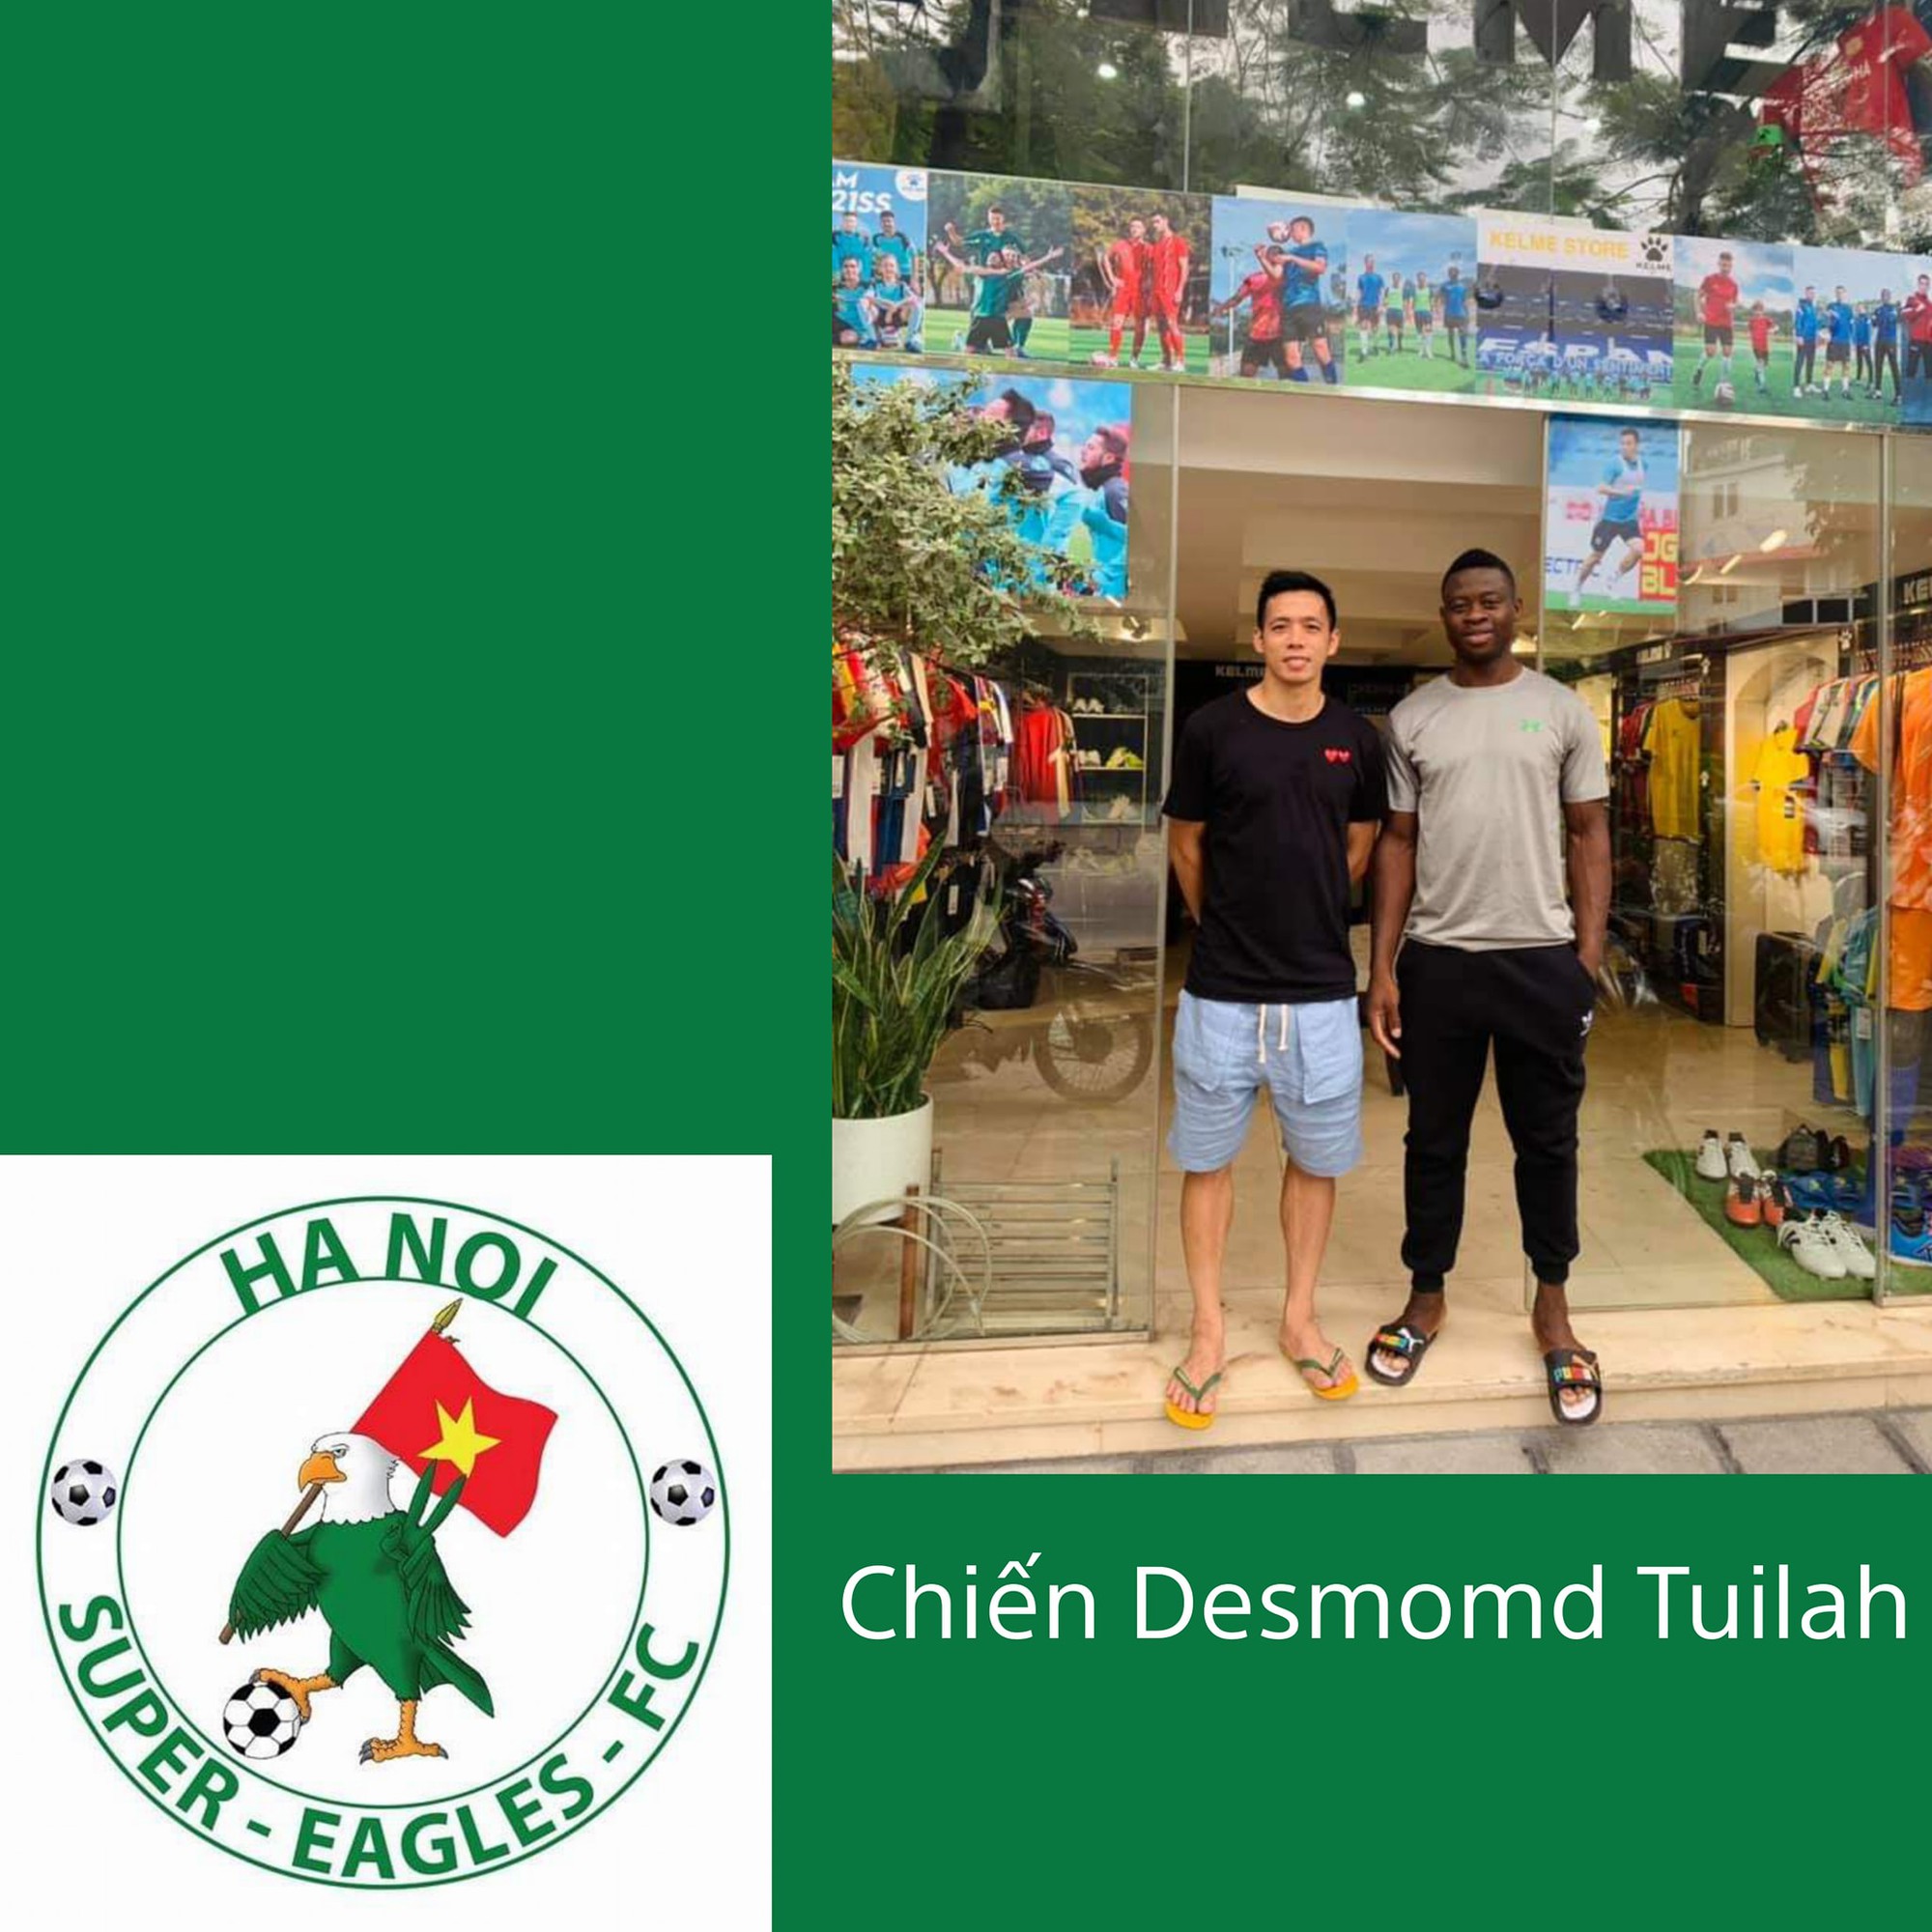 Chiến Desmond Tuilah, một cầu thủ nổi bật trong đội bóng, và cũng là cái tên được nhiều người xem bóng đá phủi biết đến.